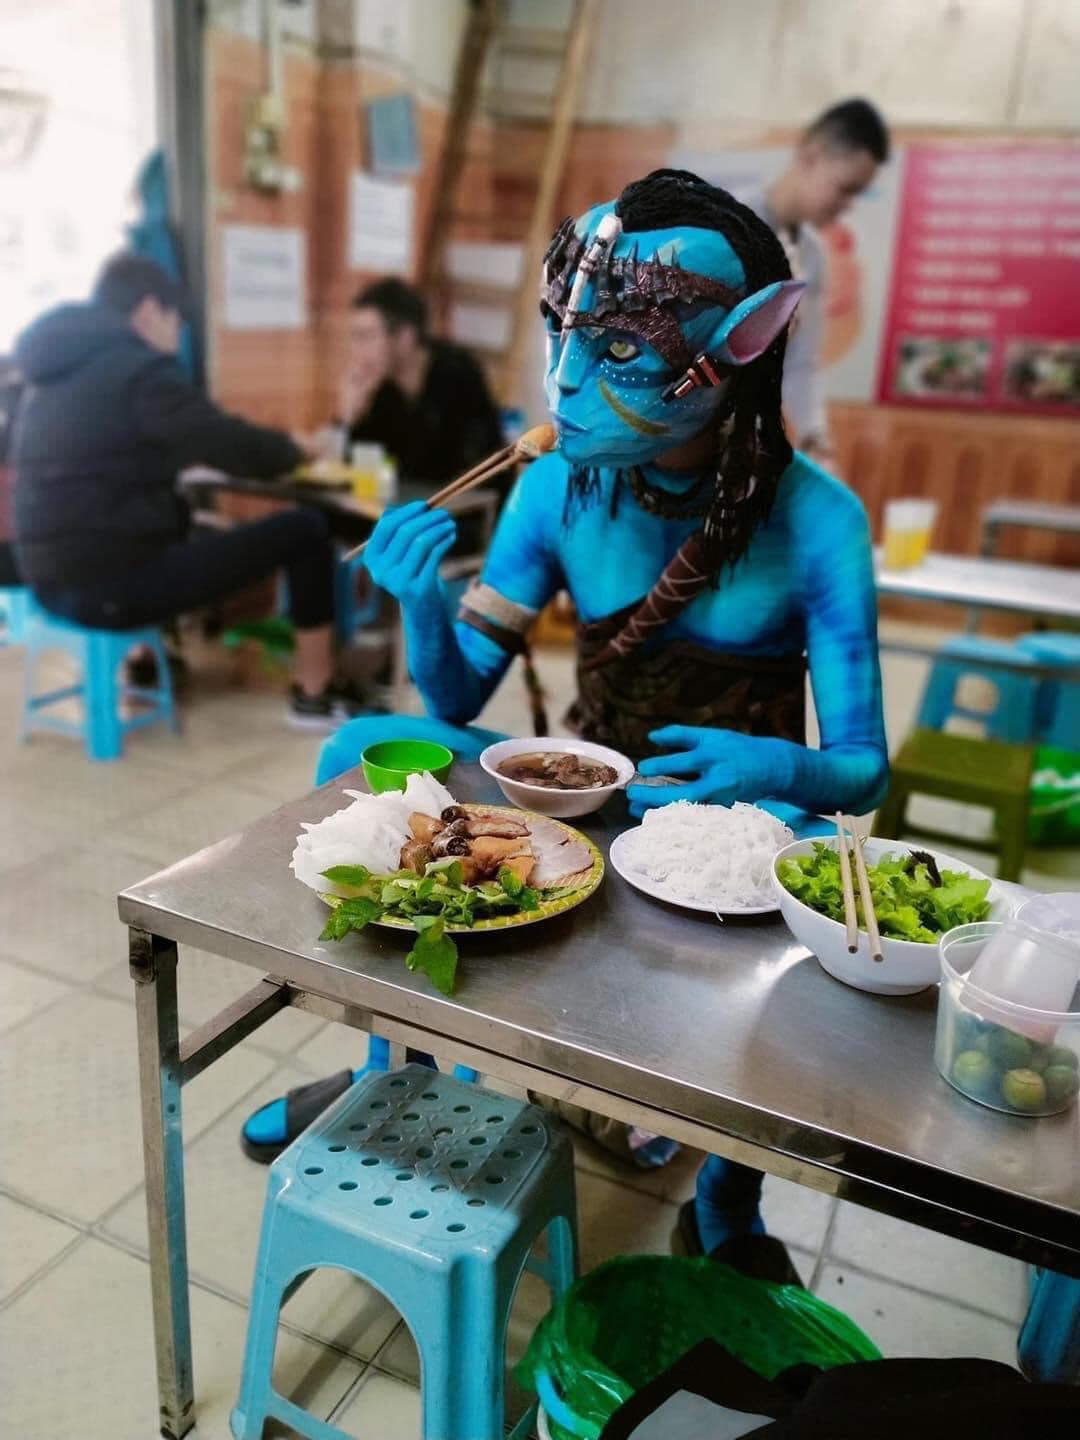 Lan truyền hình ảnh nhân vật trong 'Avatar' xuất hiện trên đường phố Việt Nam khiến CĐM dở khóc dở cười - ảnh 2